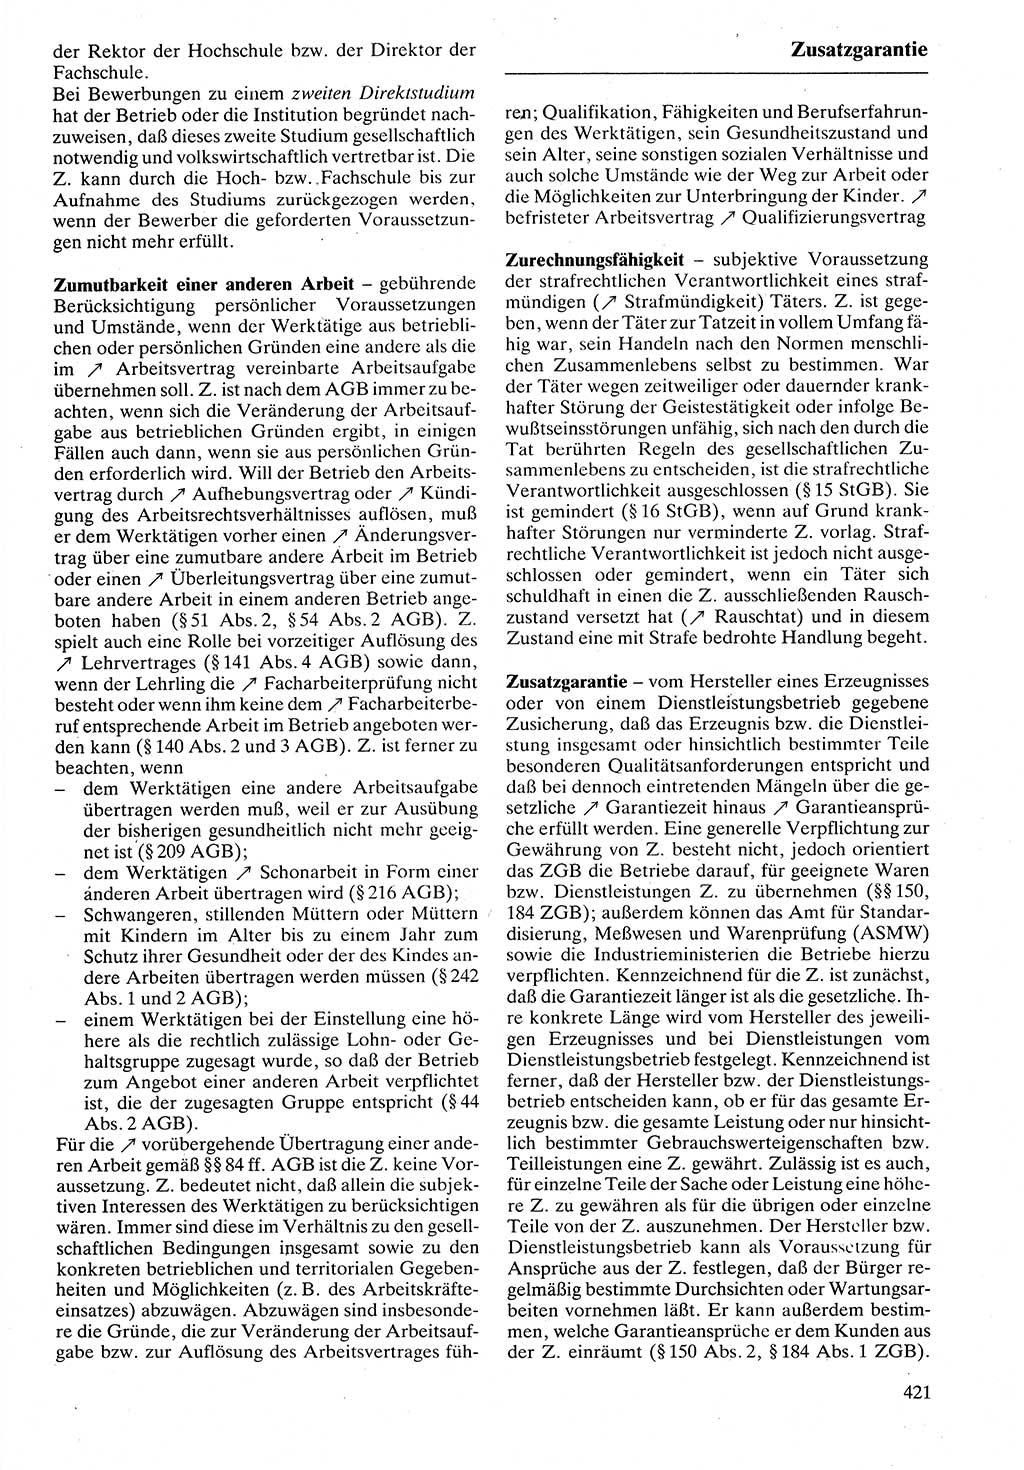 Rechtslexikon [Deutsche Demokratische Republik (DDR)] 1988, Seite 421 (Rechtslex. DDR 1988, S. 421)